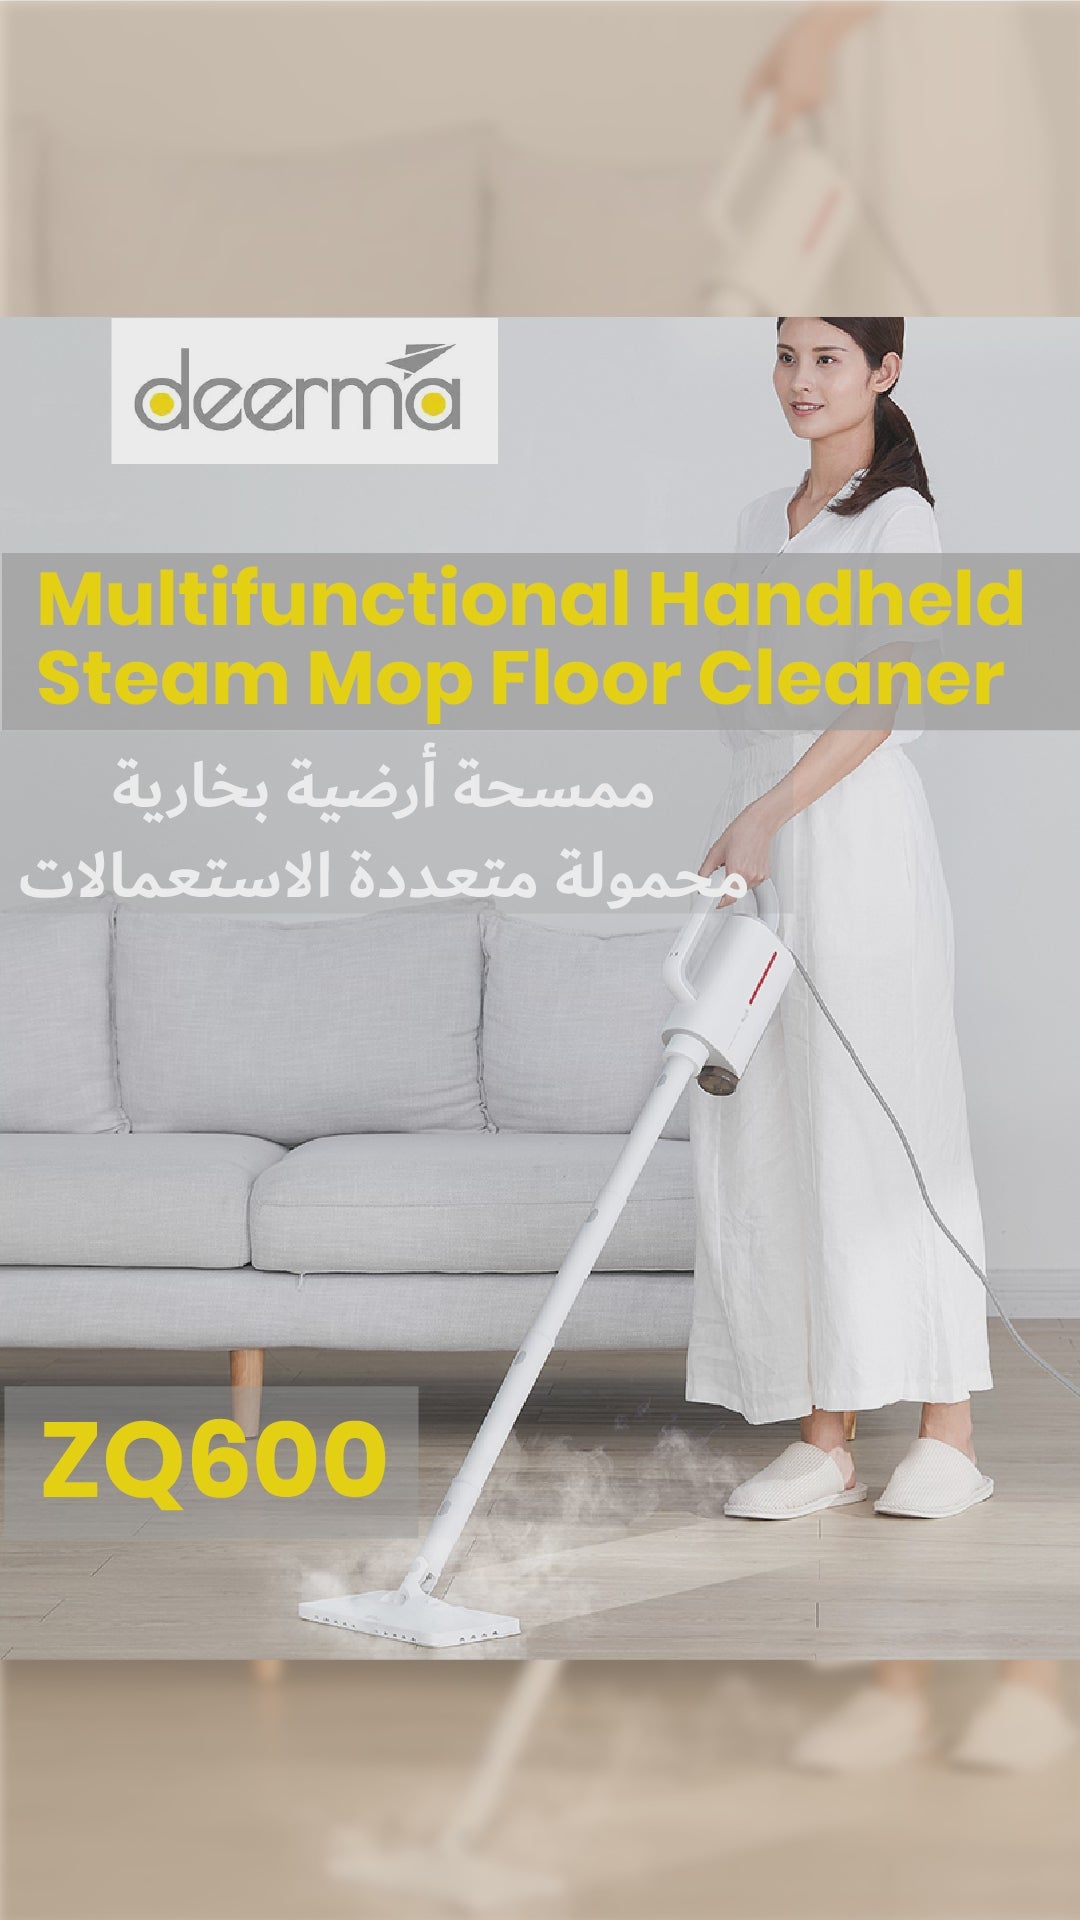 Deerma ZQ600 Multifunctional Handheld Steam Mop Floor Cleaner - White